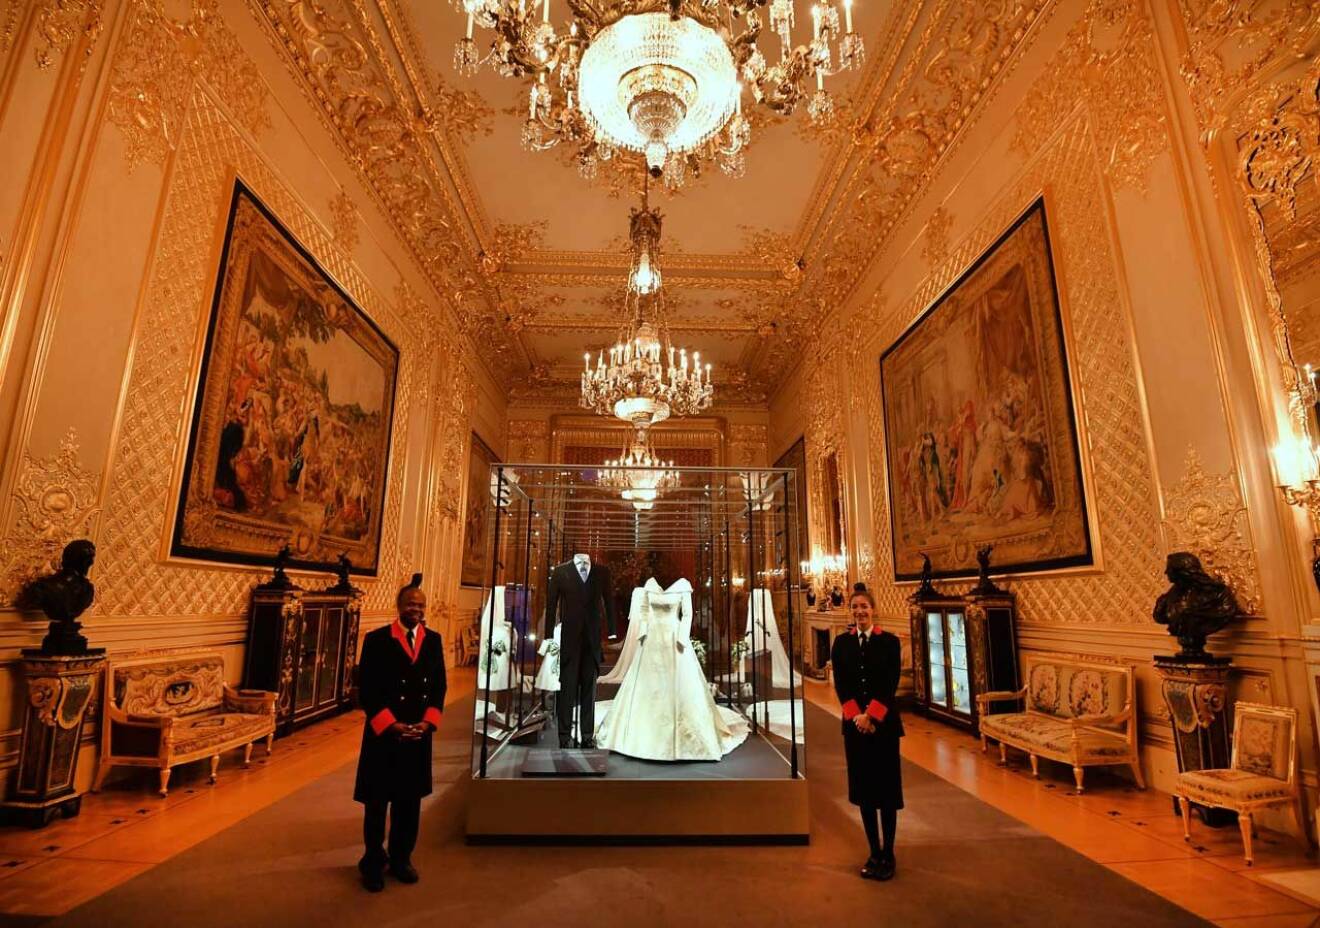 Bröllopsutställningen visas i The Grand Reception Room på Windsor Castle.